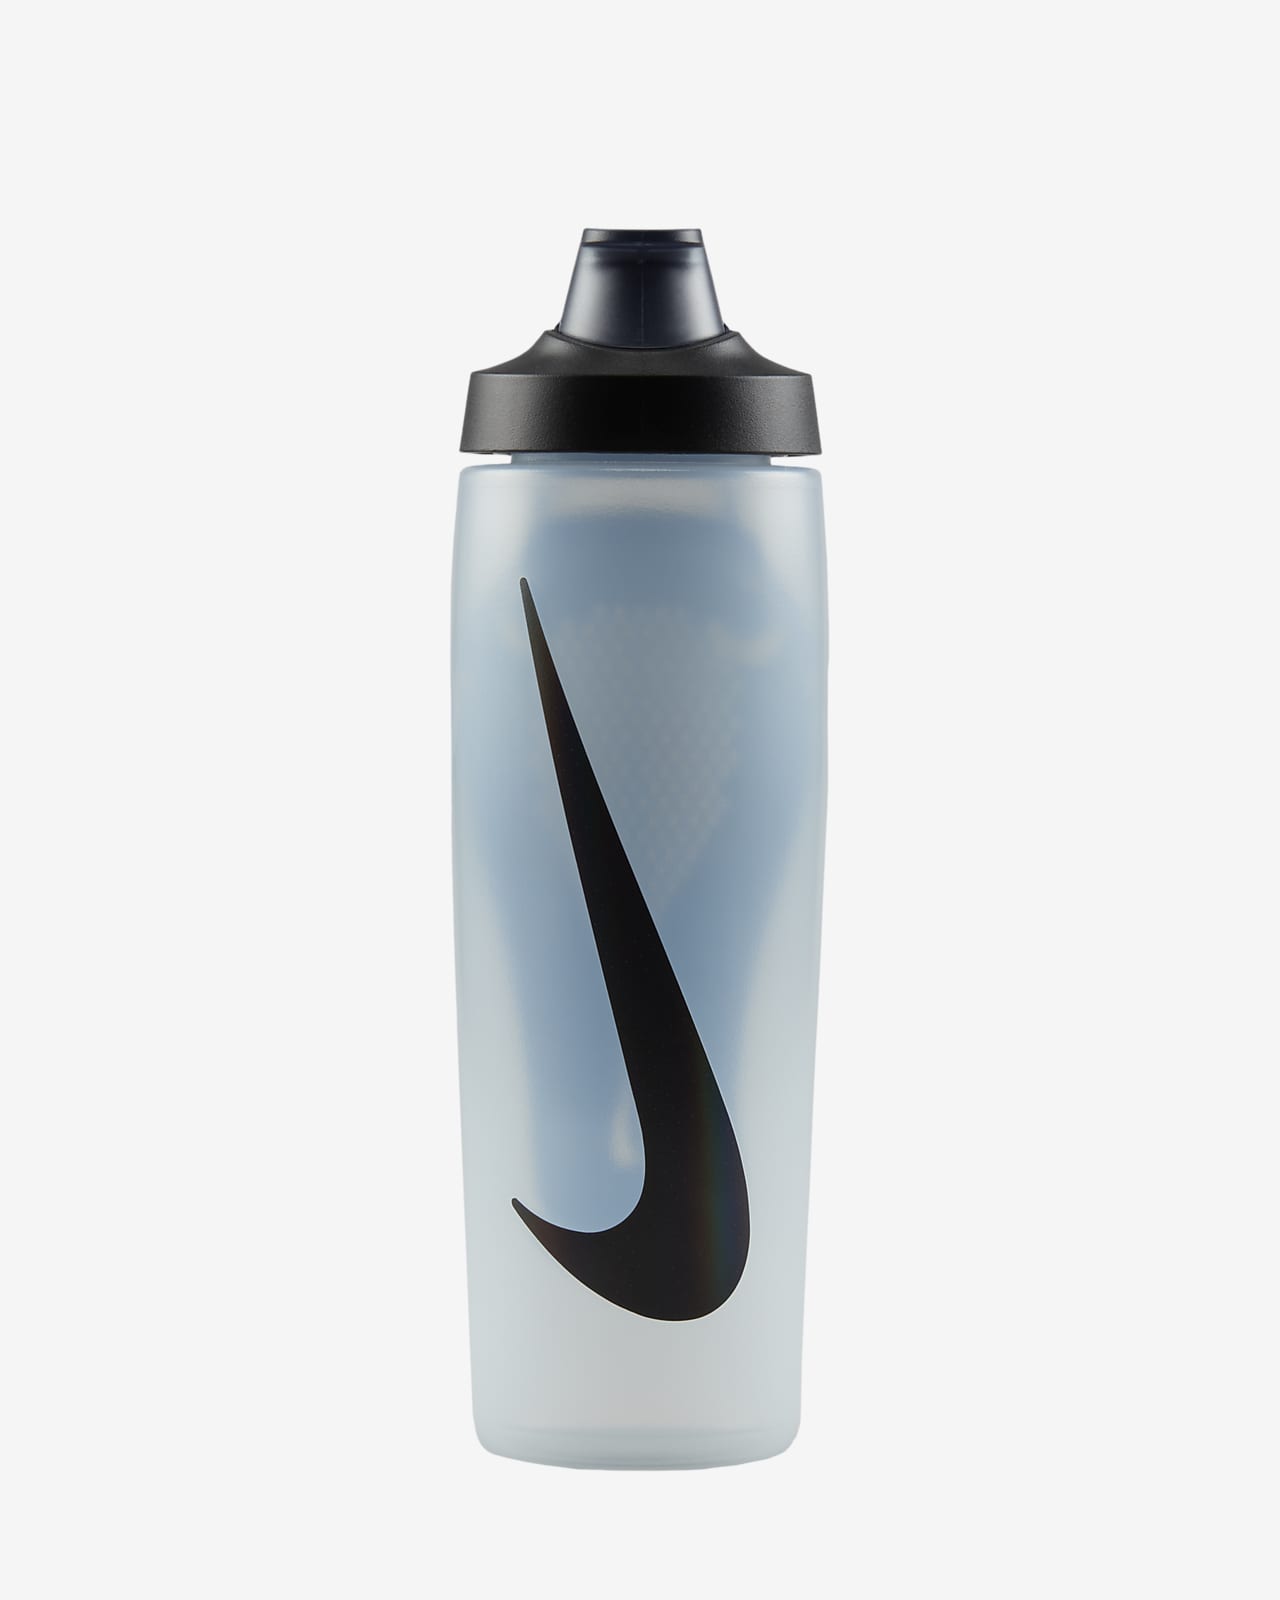 Nike Refuel Locking-Lid Water Bottle (710ml approx.)